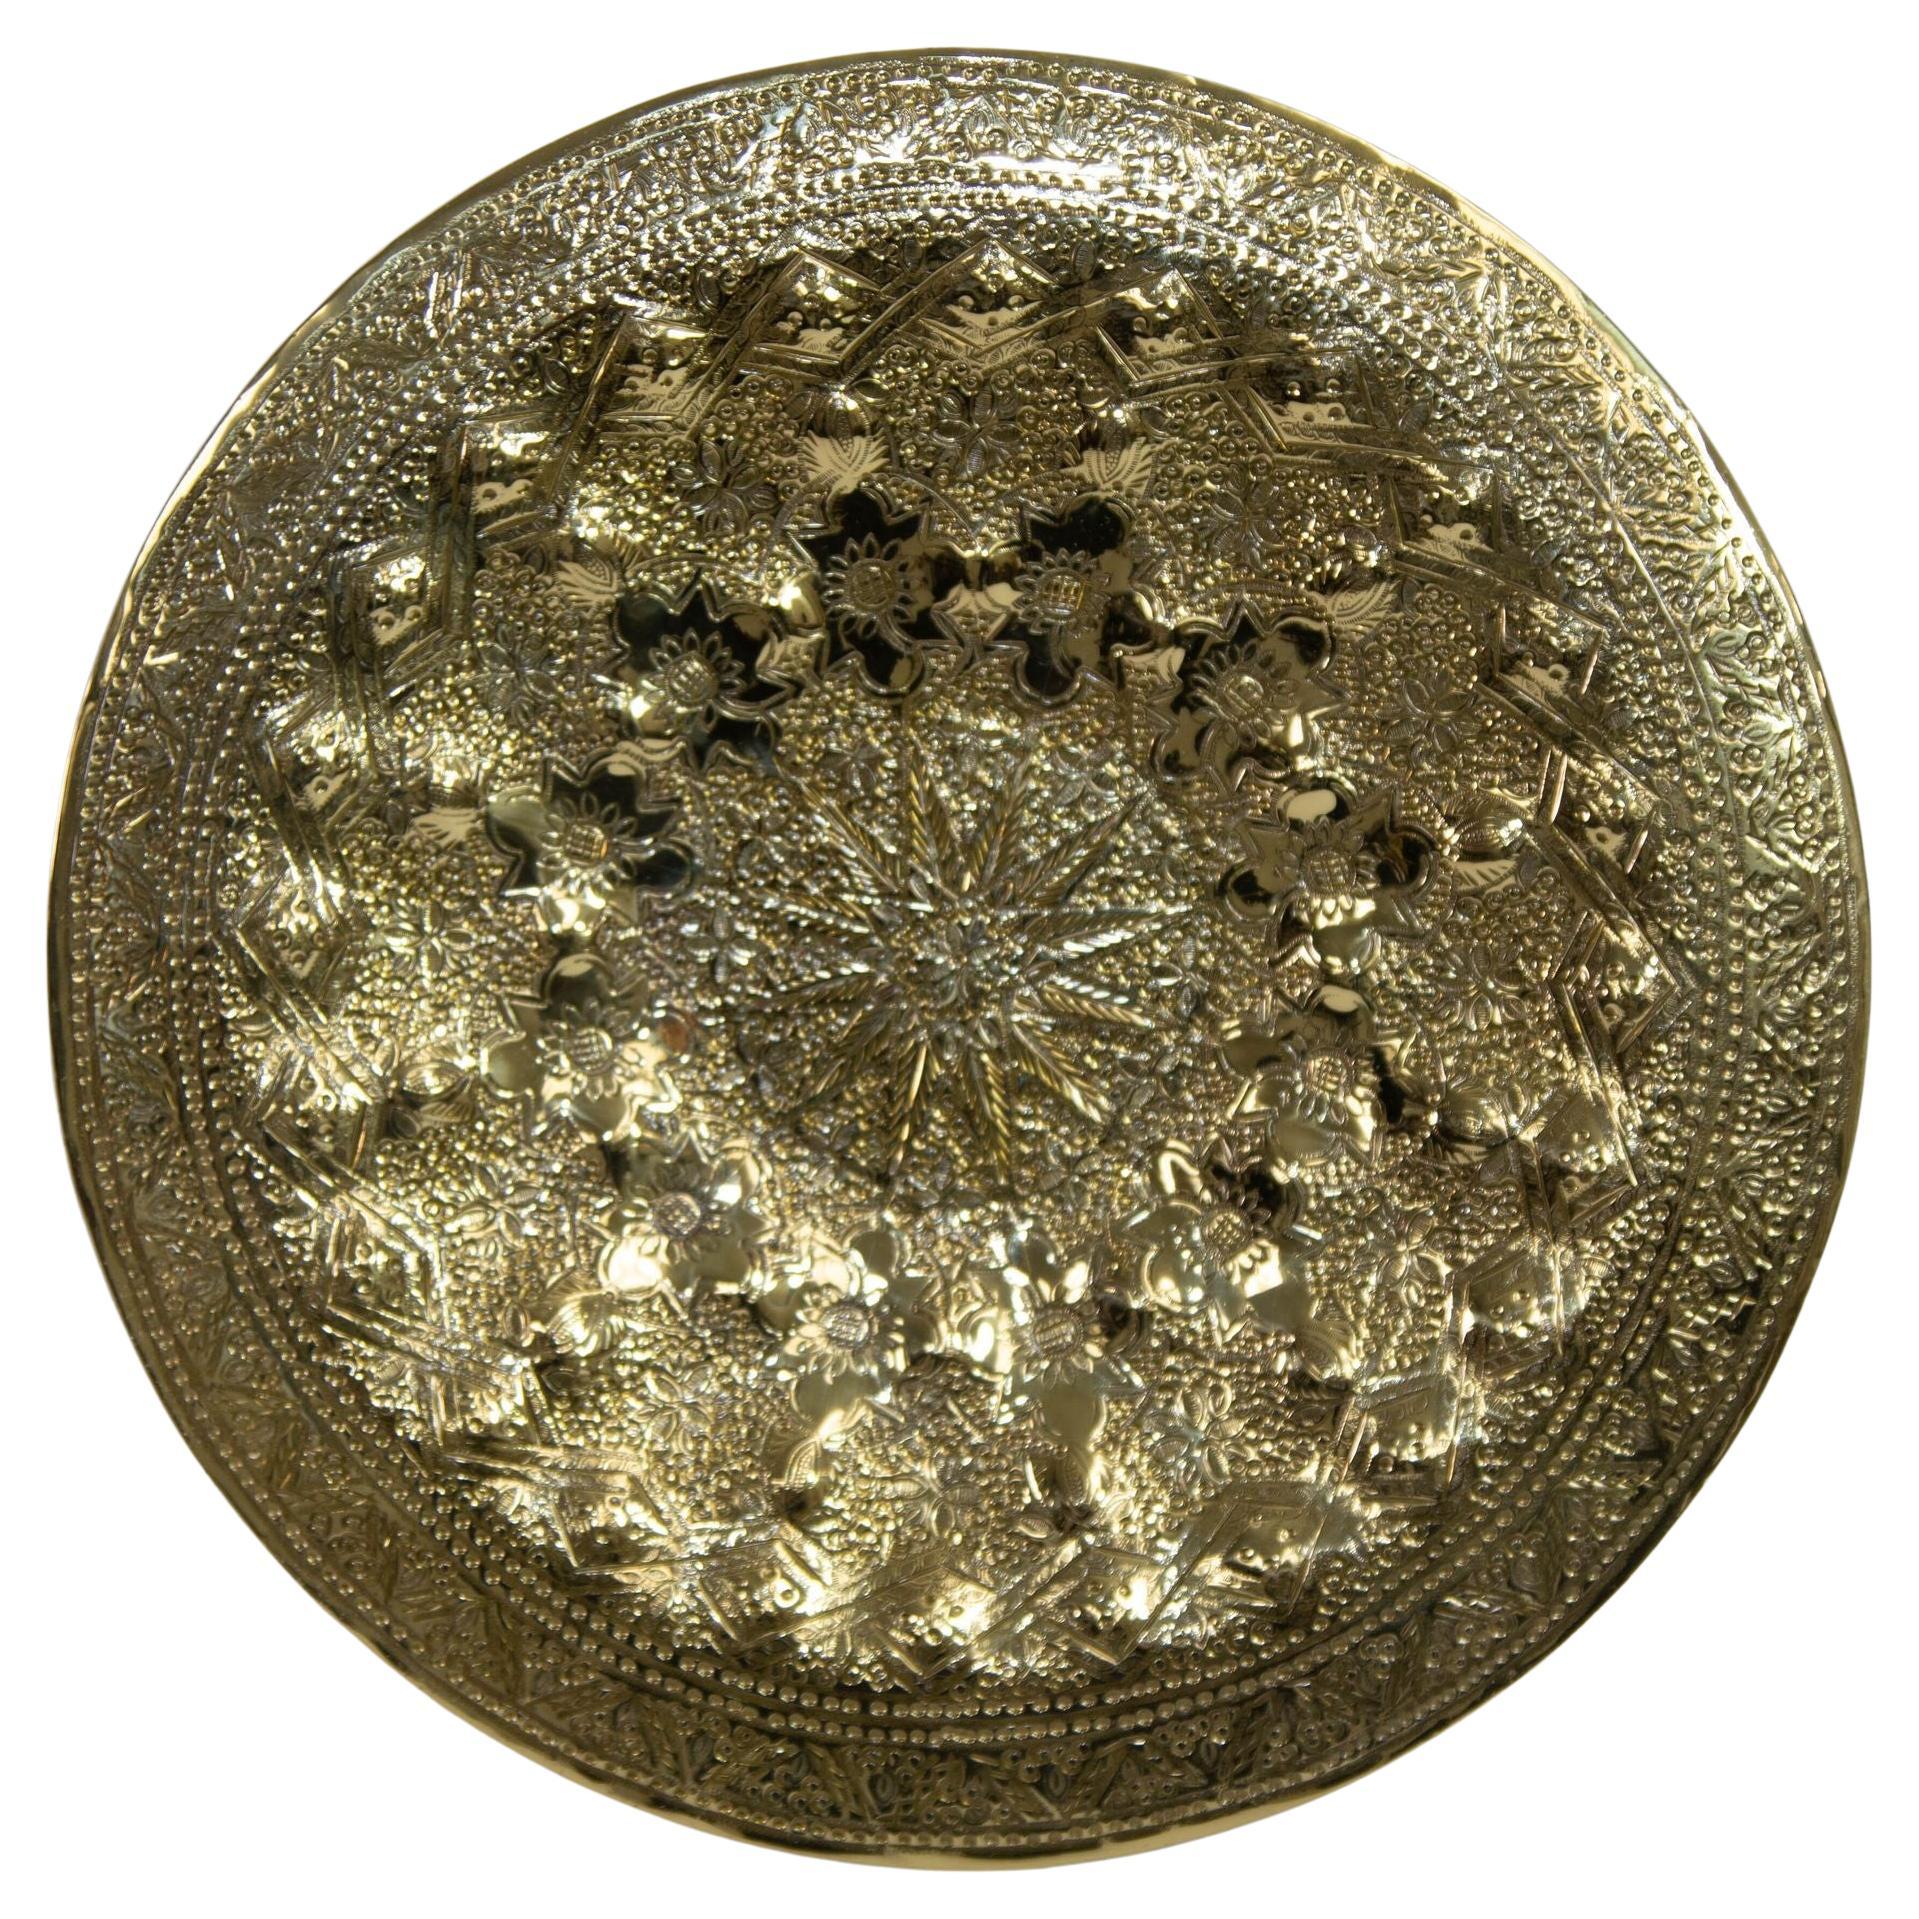 Islamisches persisches Tablett aus poliertem Messing, Sammlerstück, Metallarbeitsplatte, 10 Zoll D.